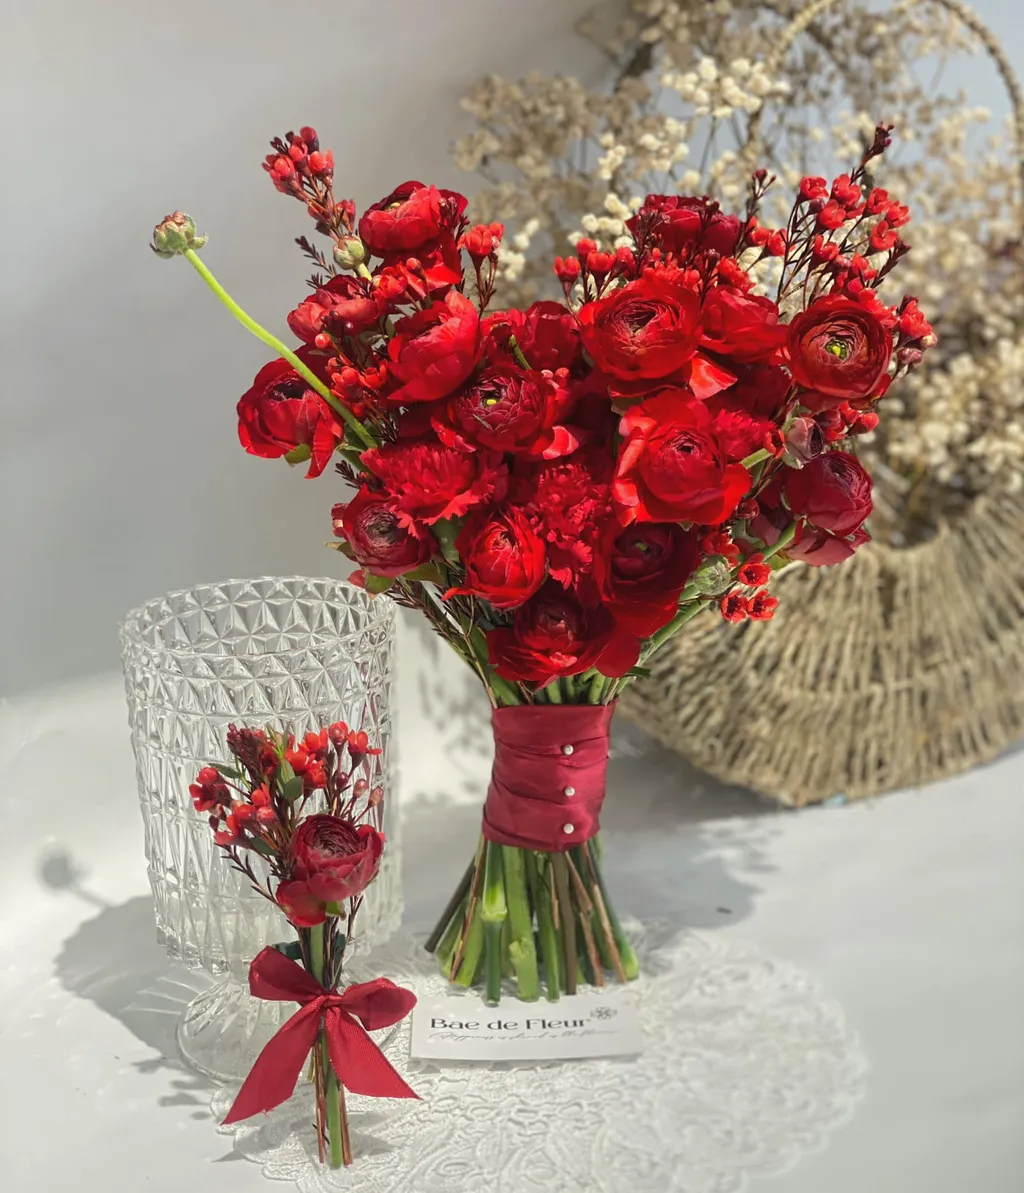 Hoa thanh liễu kết hợp cùng hoa mao lương đỏ tạo nên một bó hoa cưới cực đẹp